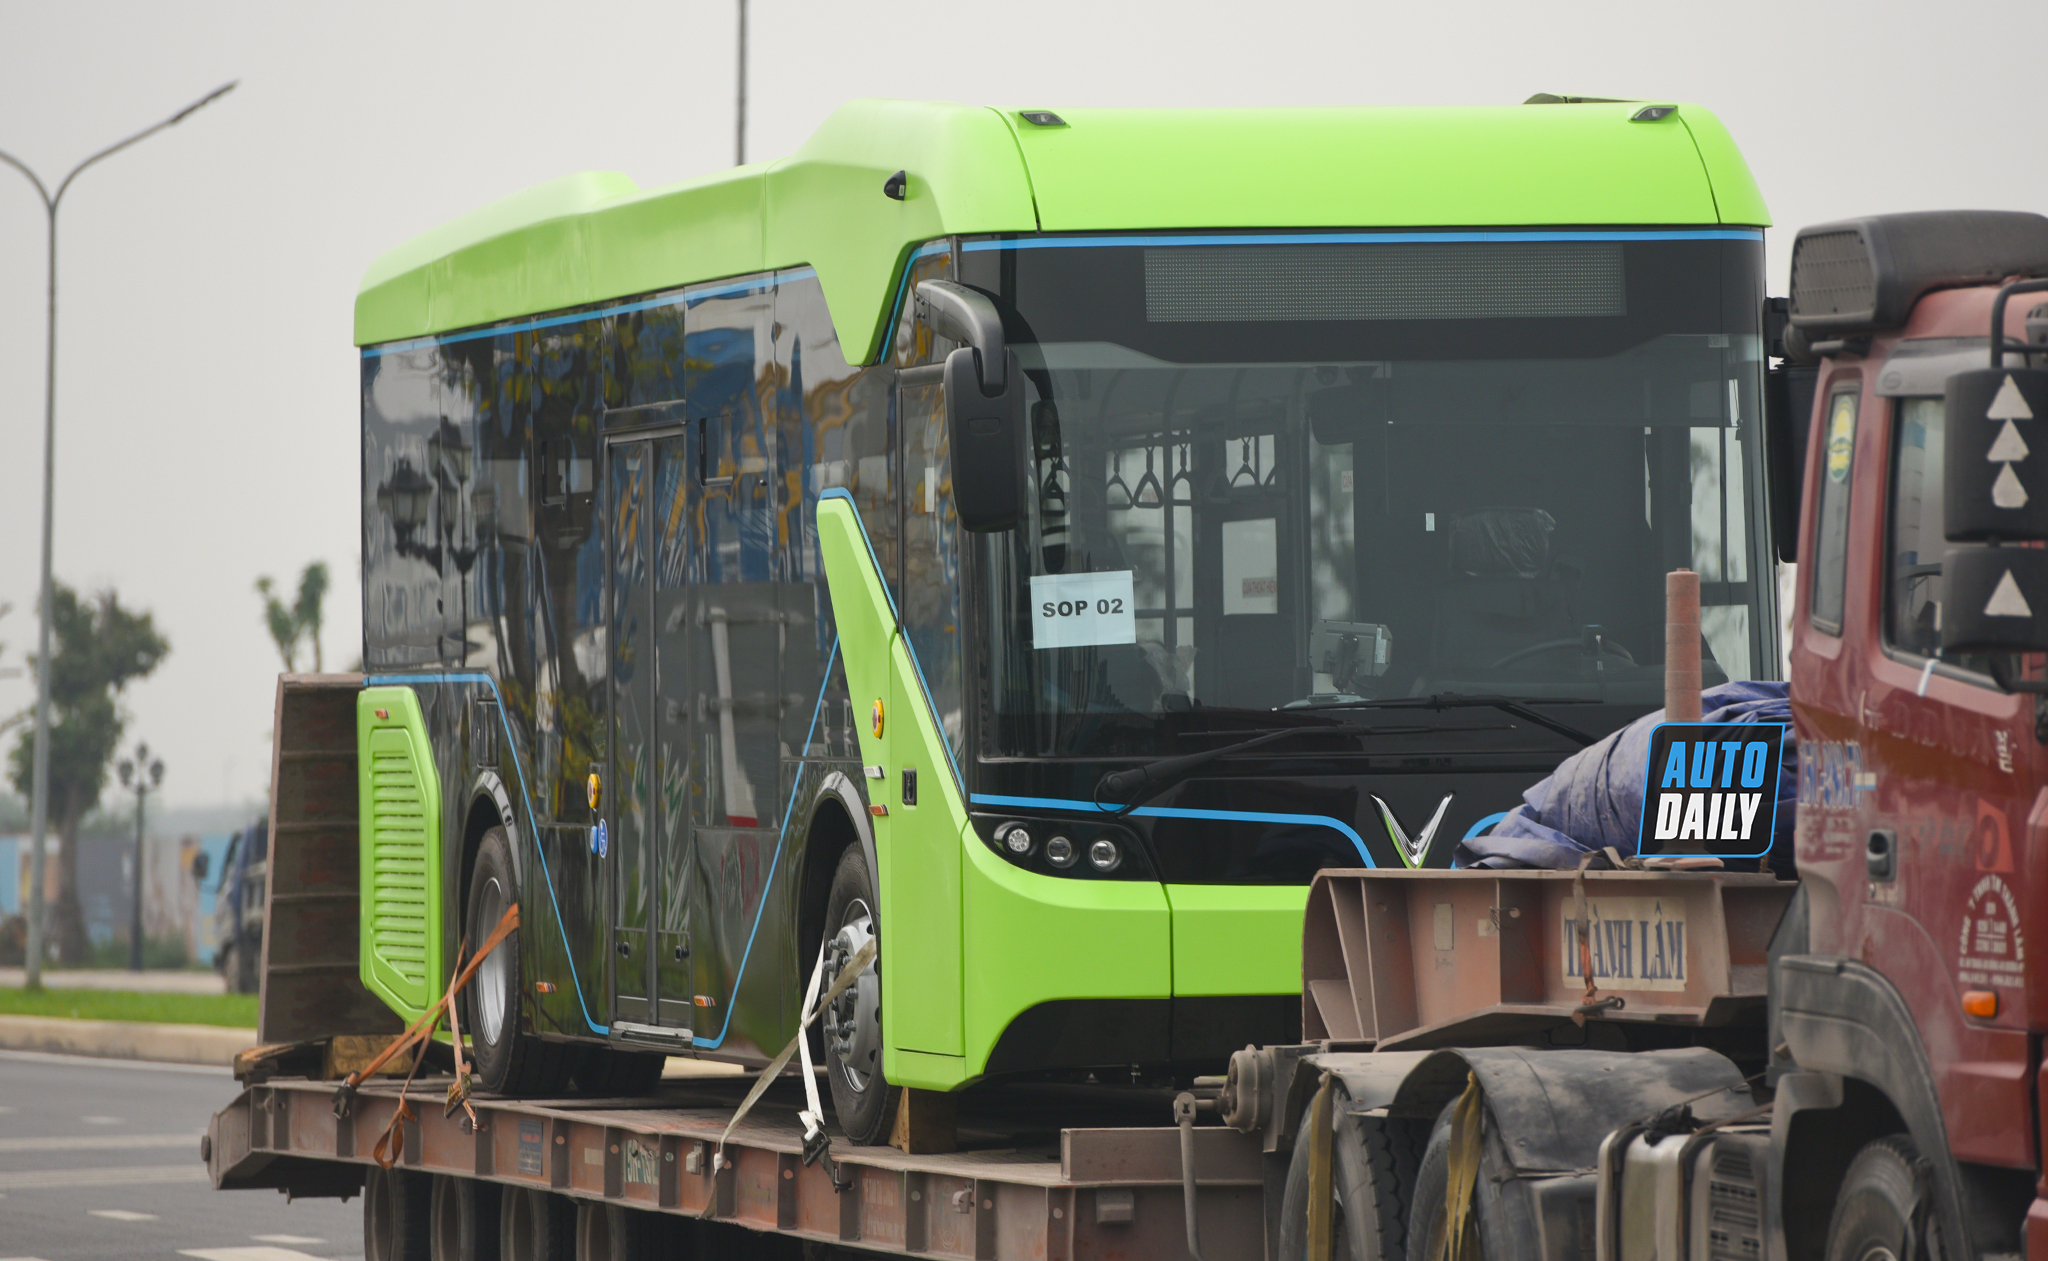 Chùm ảnh loạt xe Bus điện VinFast có mặt tại Hà Nội, sẵn sàng chạy thí điểm dsc-3835-copy.jpg